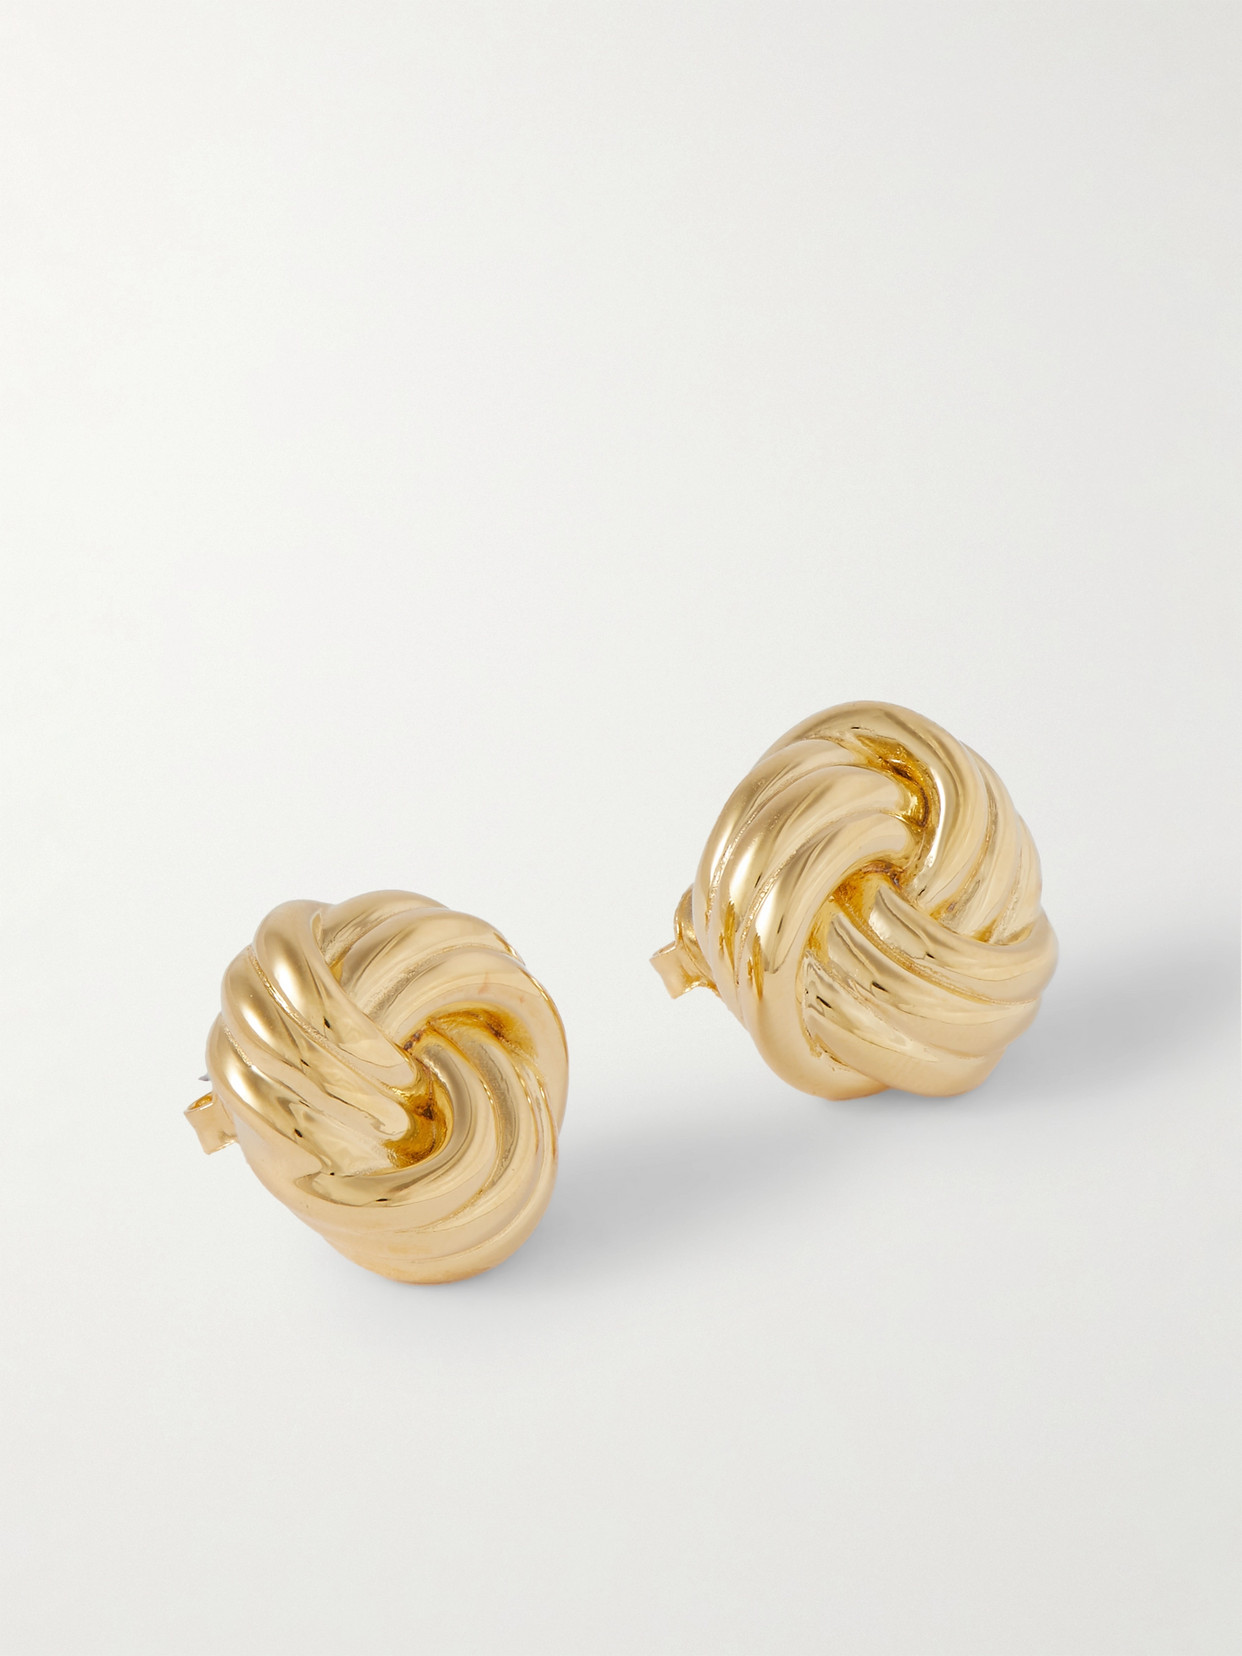 The Elizabeth Gold Vermeil Earrings